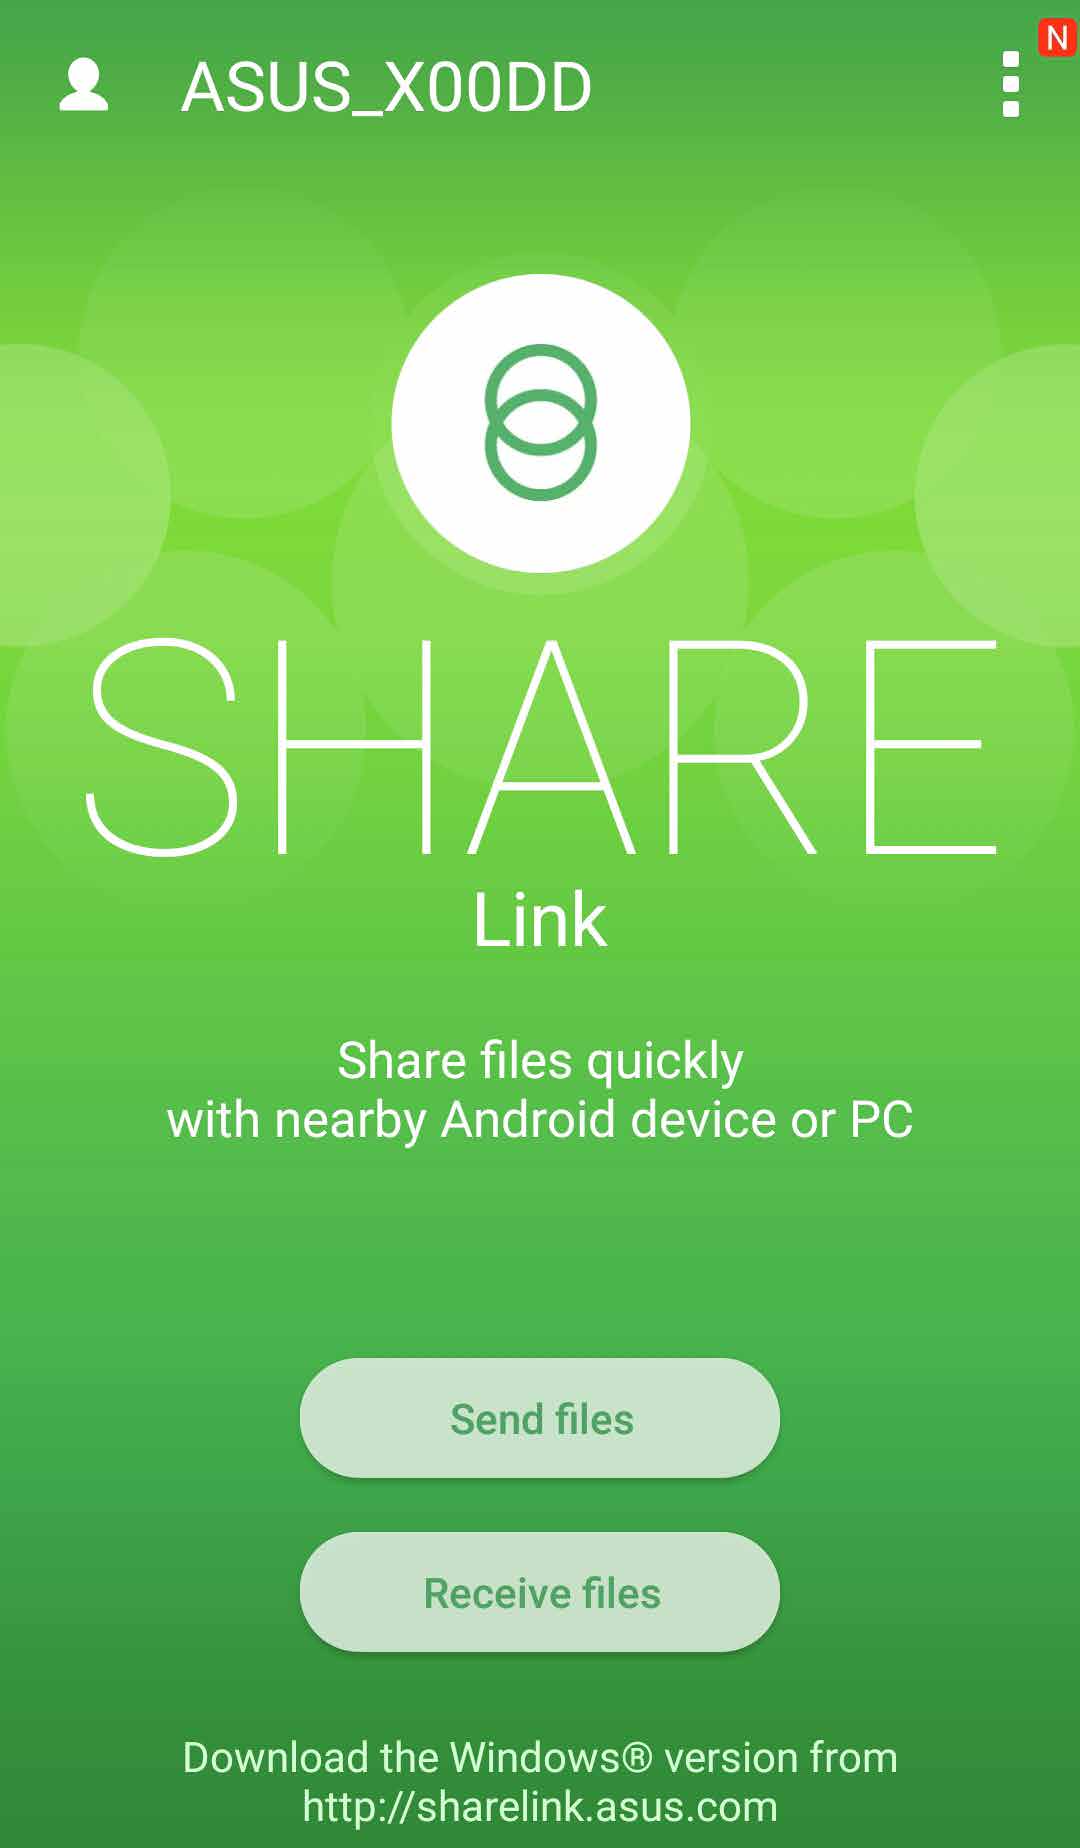 9 ZenLink ZenLink 9 Share Link Bestanden, apps of media-inhoud delen en ontvangen met mobiele Android-apparaten via de app Share Link (voor mobiele ASUS-apparaten) of de app SHAREit (voor andere